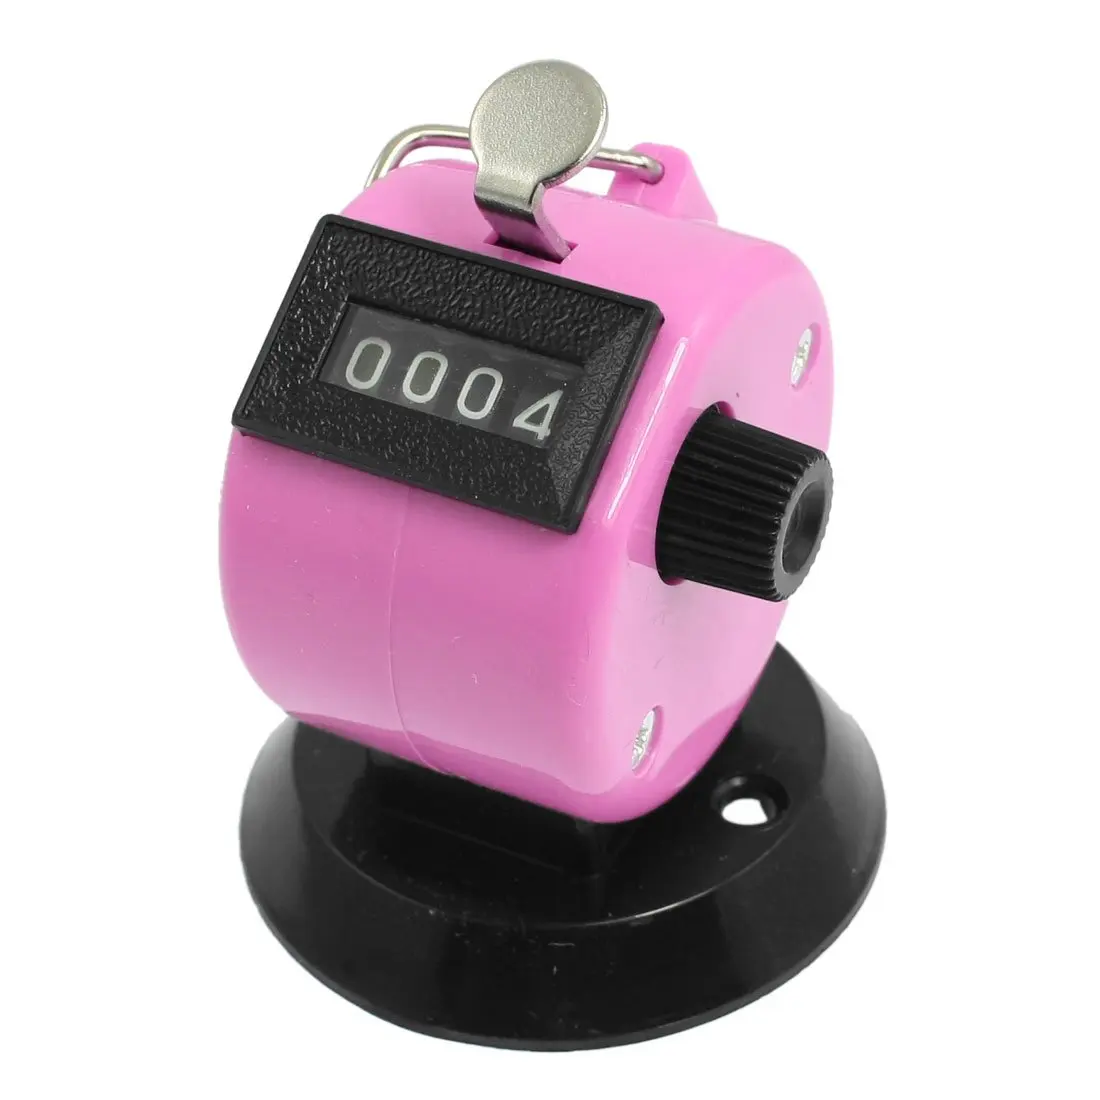 Sosw-Гольф шаг 4 цифры номер кликер ручной талли счетчик черный, розовый